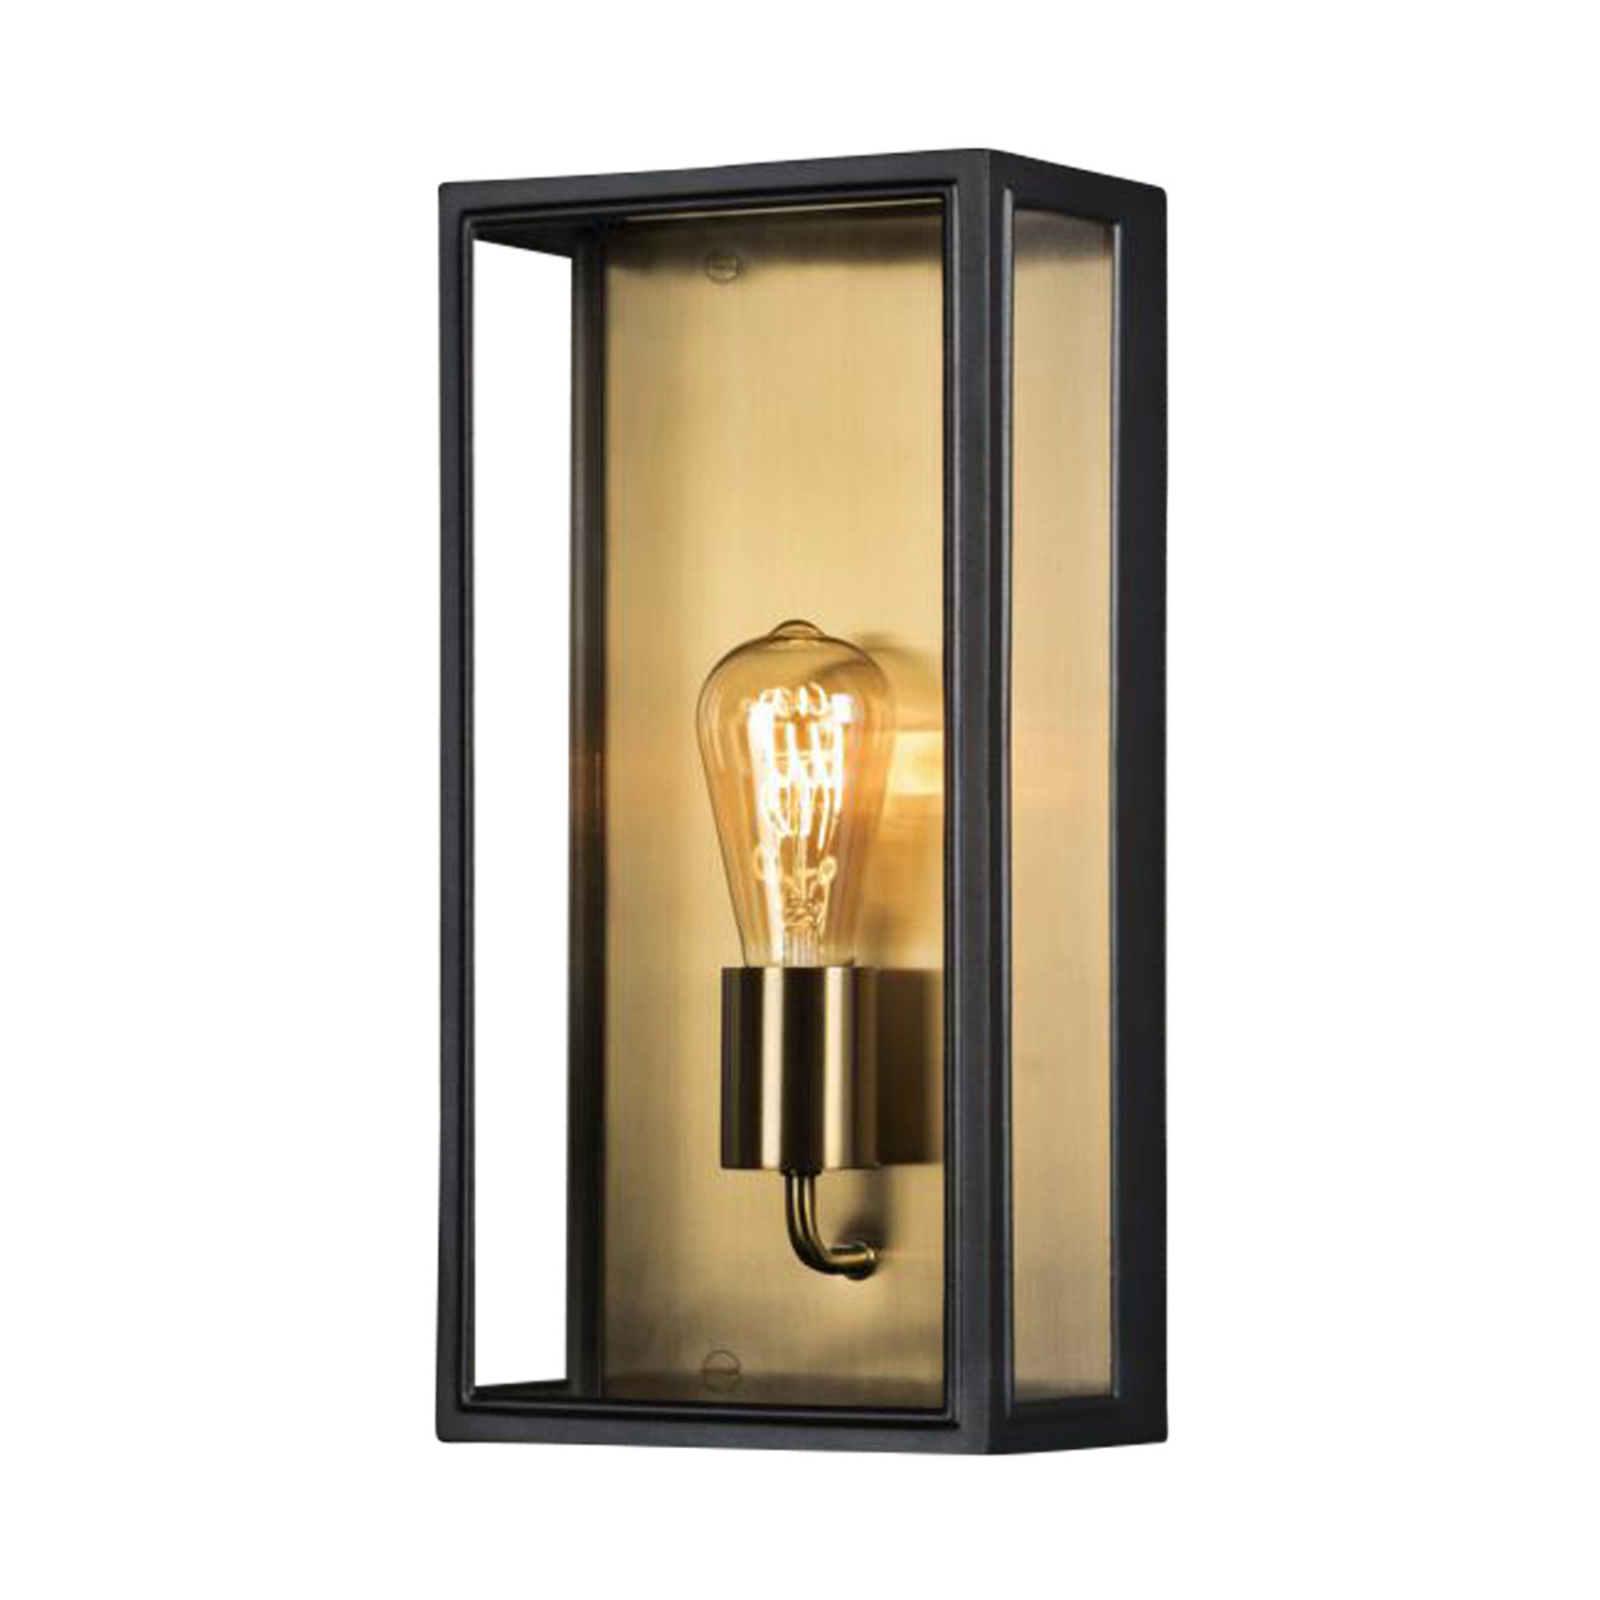 Venkovní nástěnná lampa Carpi, černá, šířka 20,5 cm